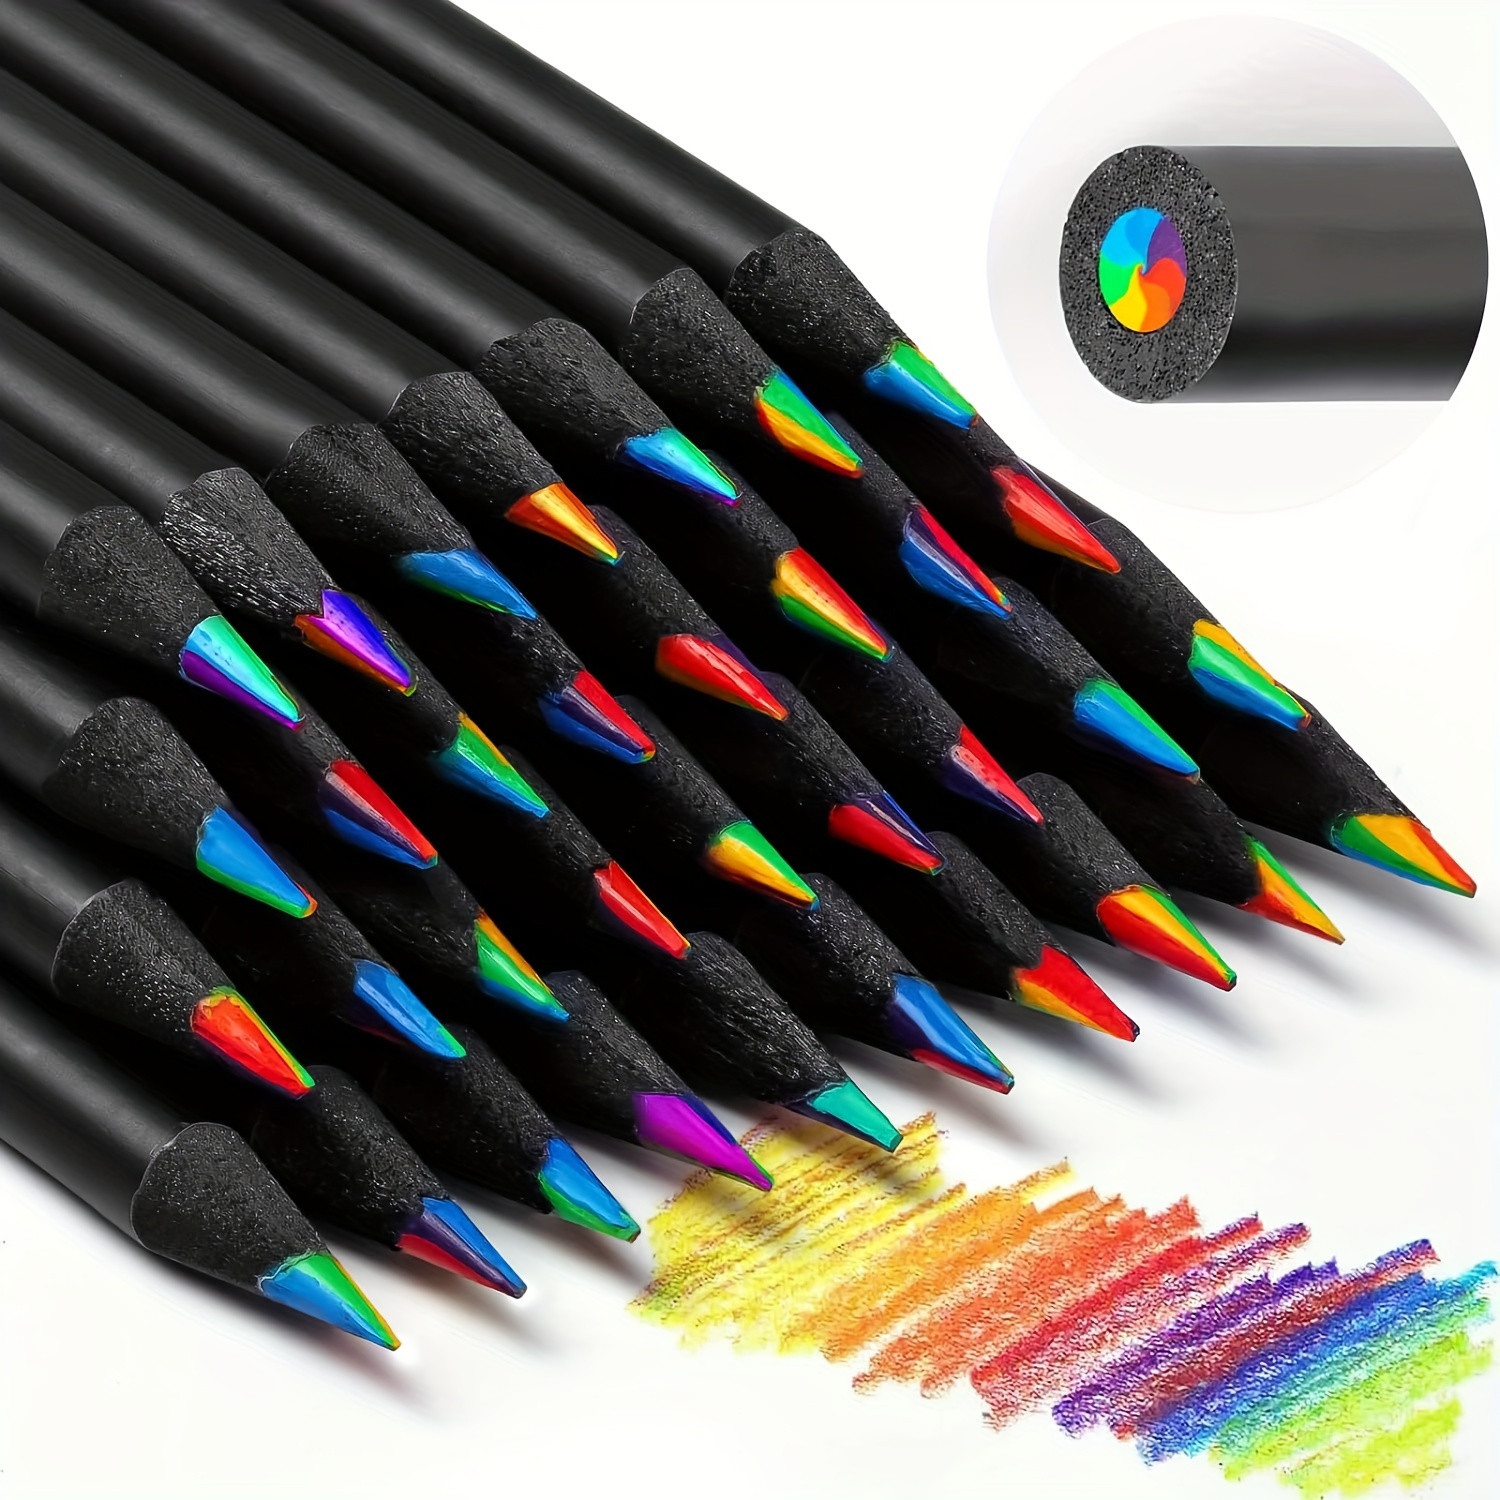 10 matite con colori arcobaleno - nere